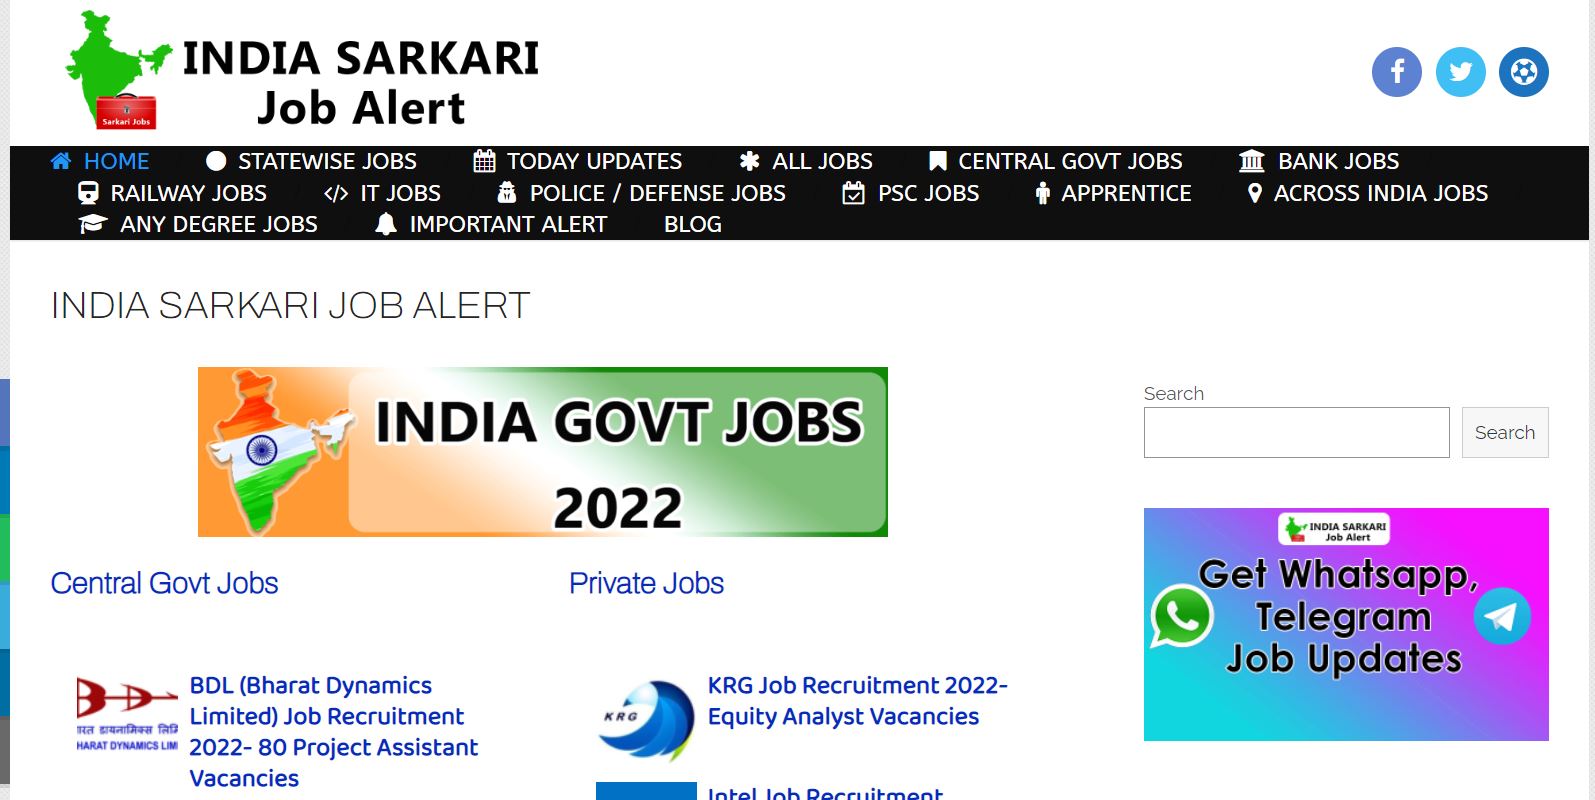 India Sarkari Job Alert